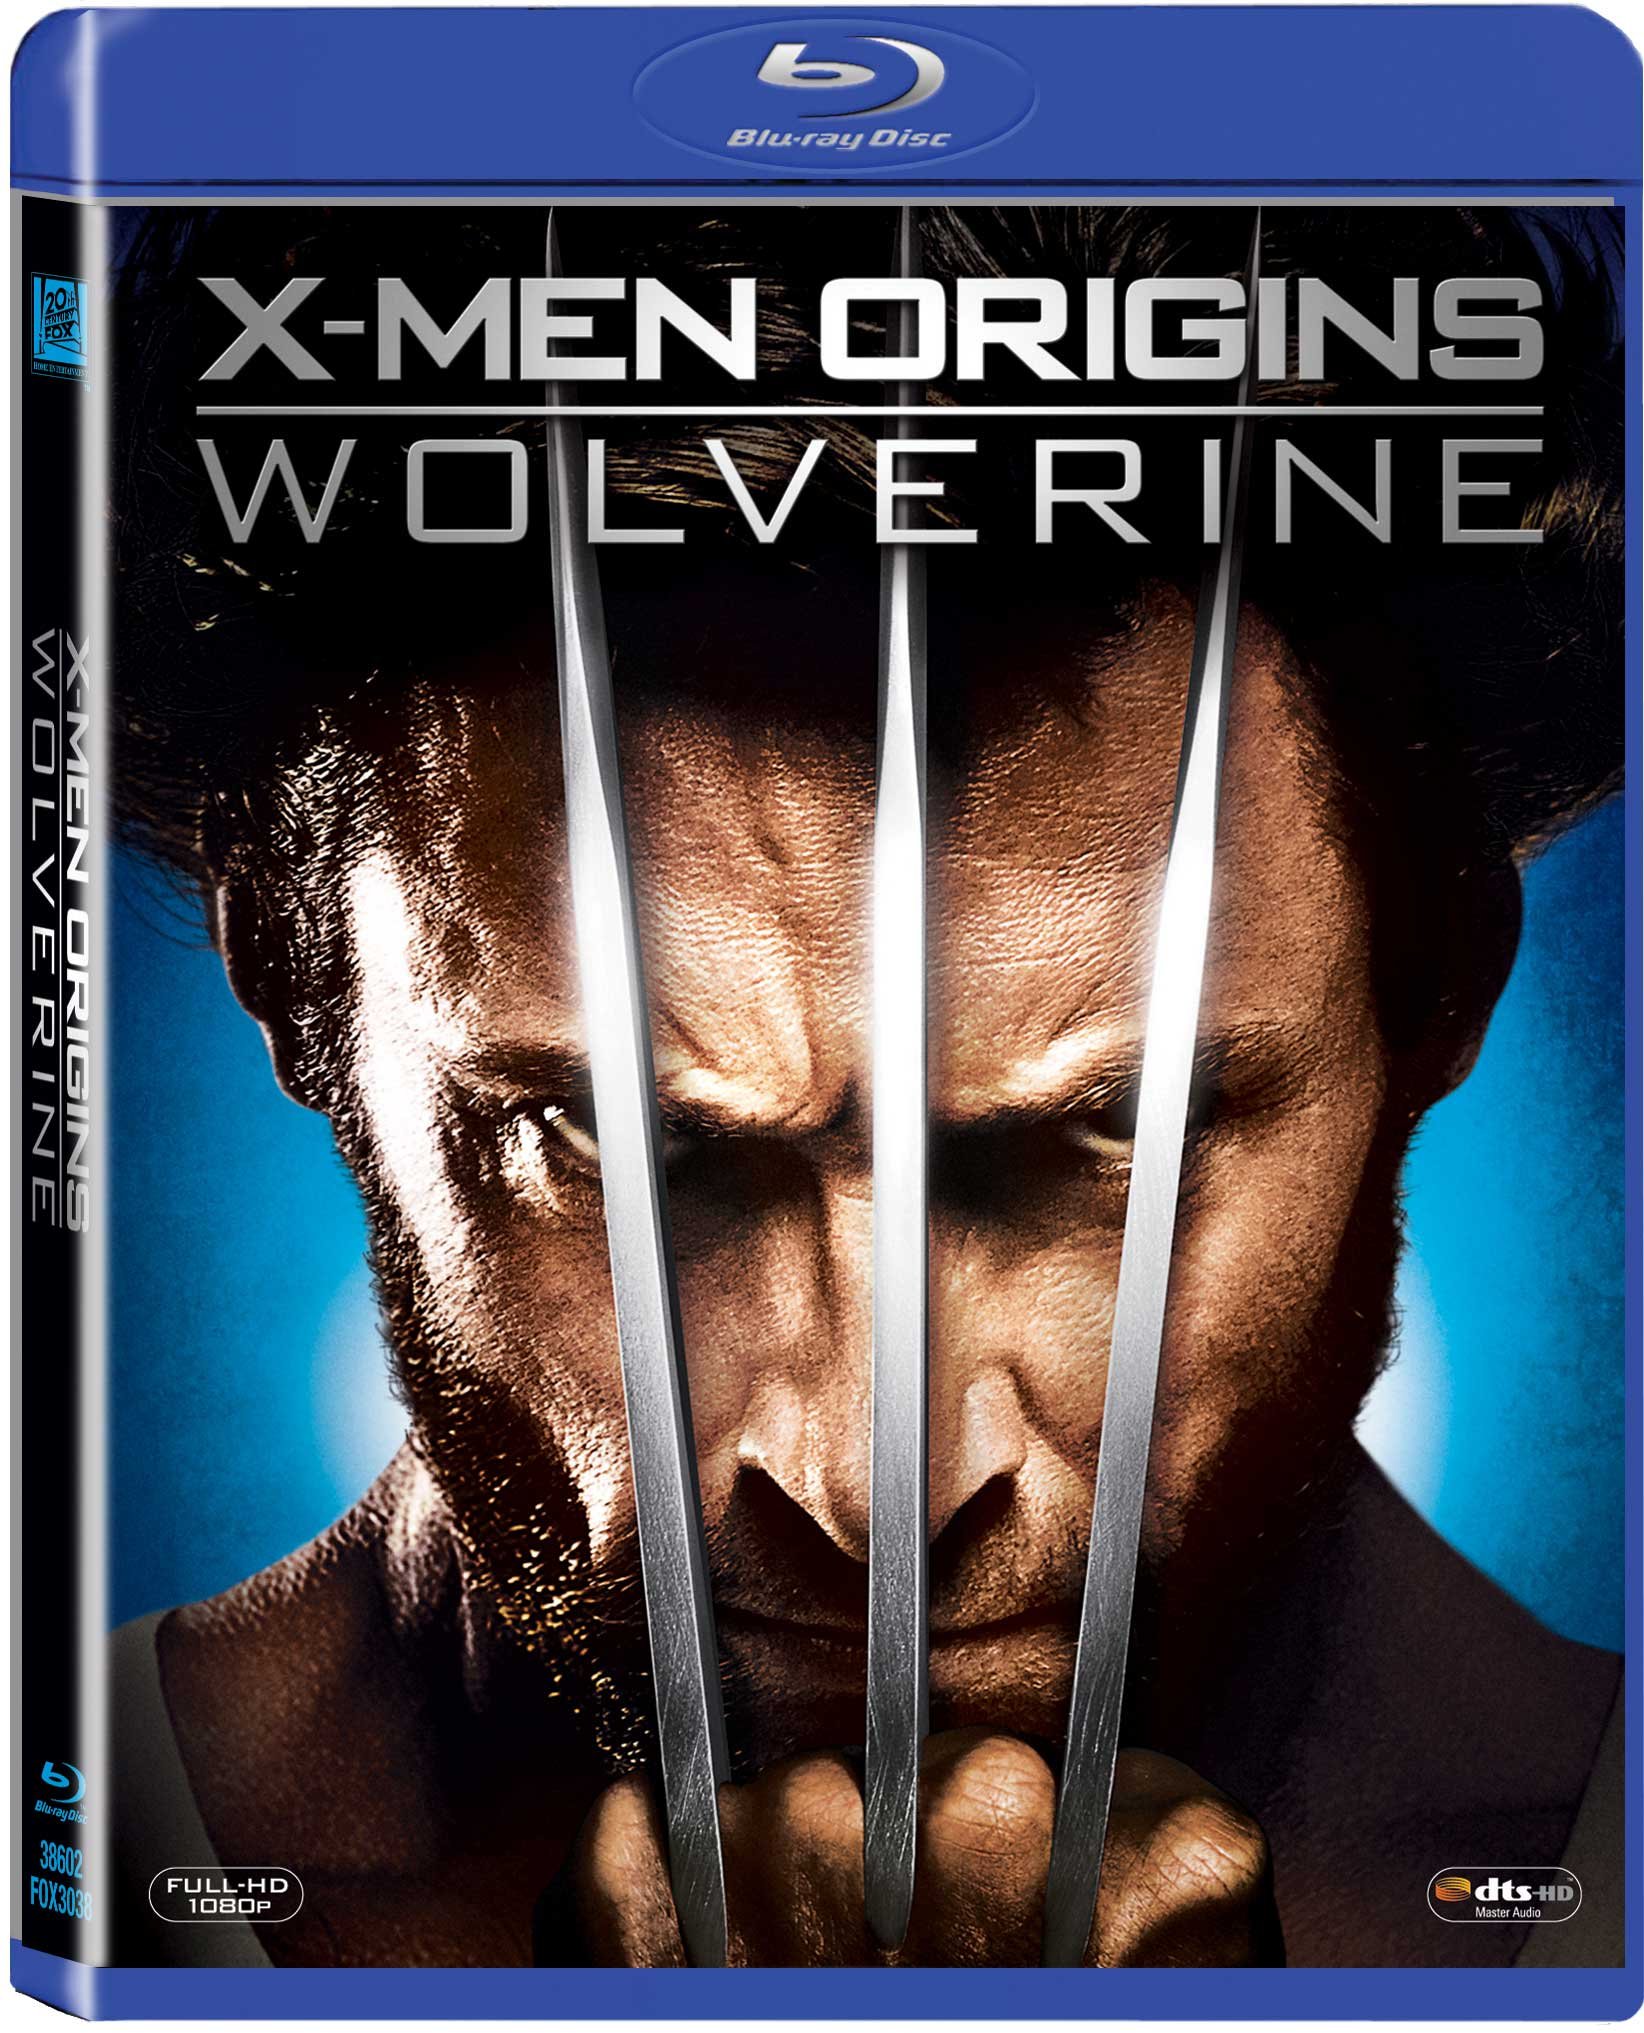 x-men-origins-wolverine-movie-purchase-or-watch-online